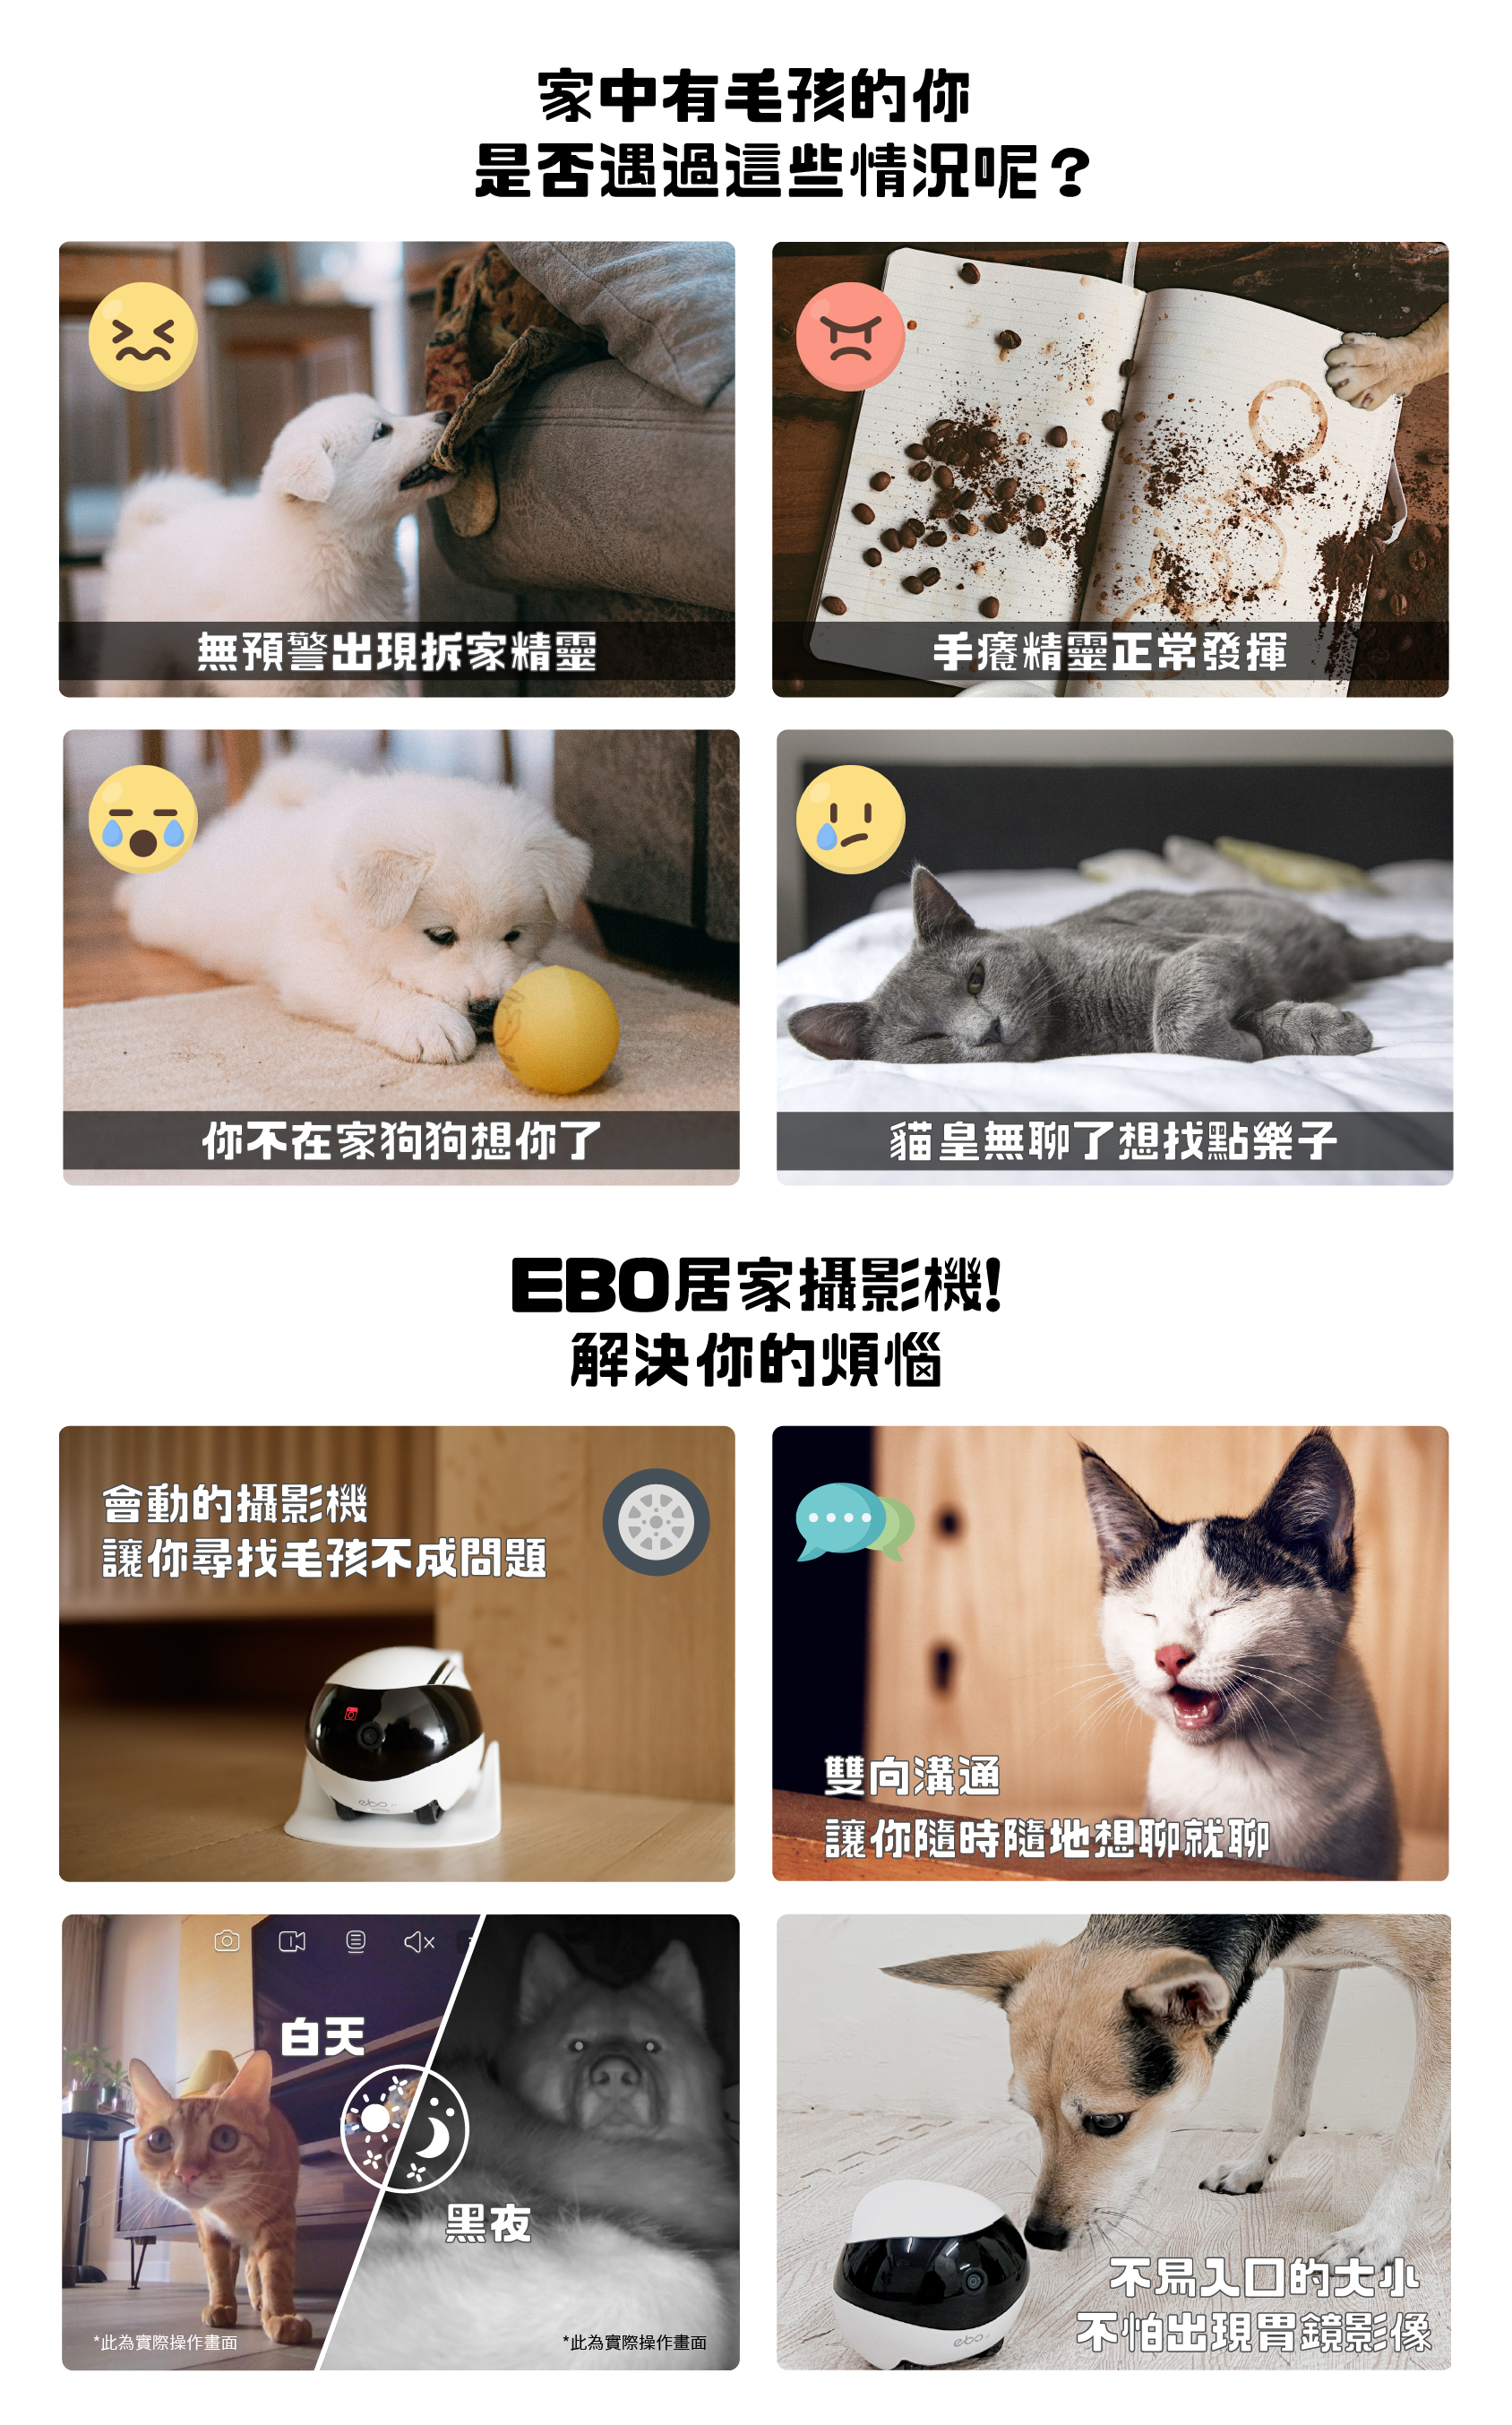 Ebo SE/Air 智慧居家攝影機